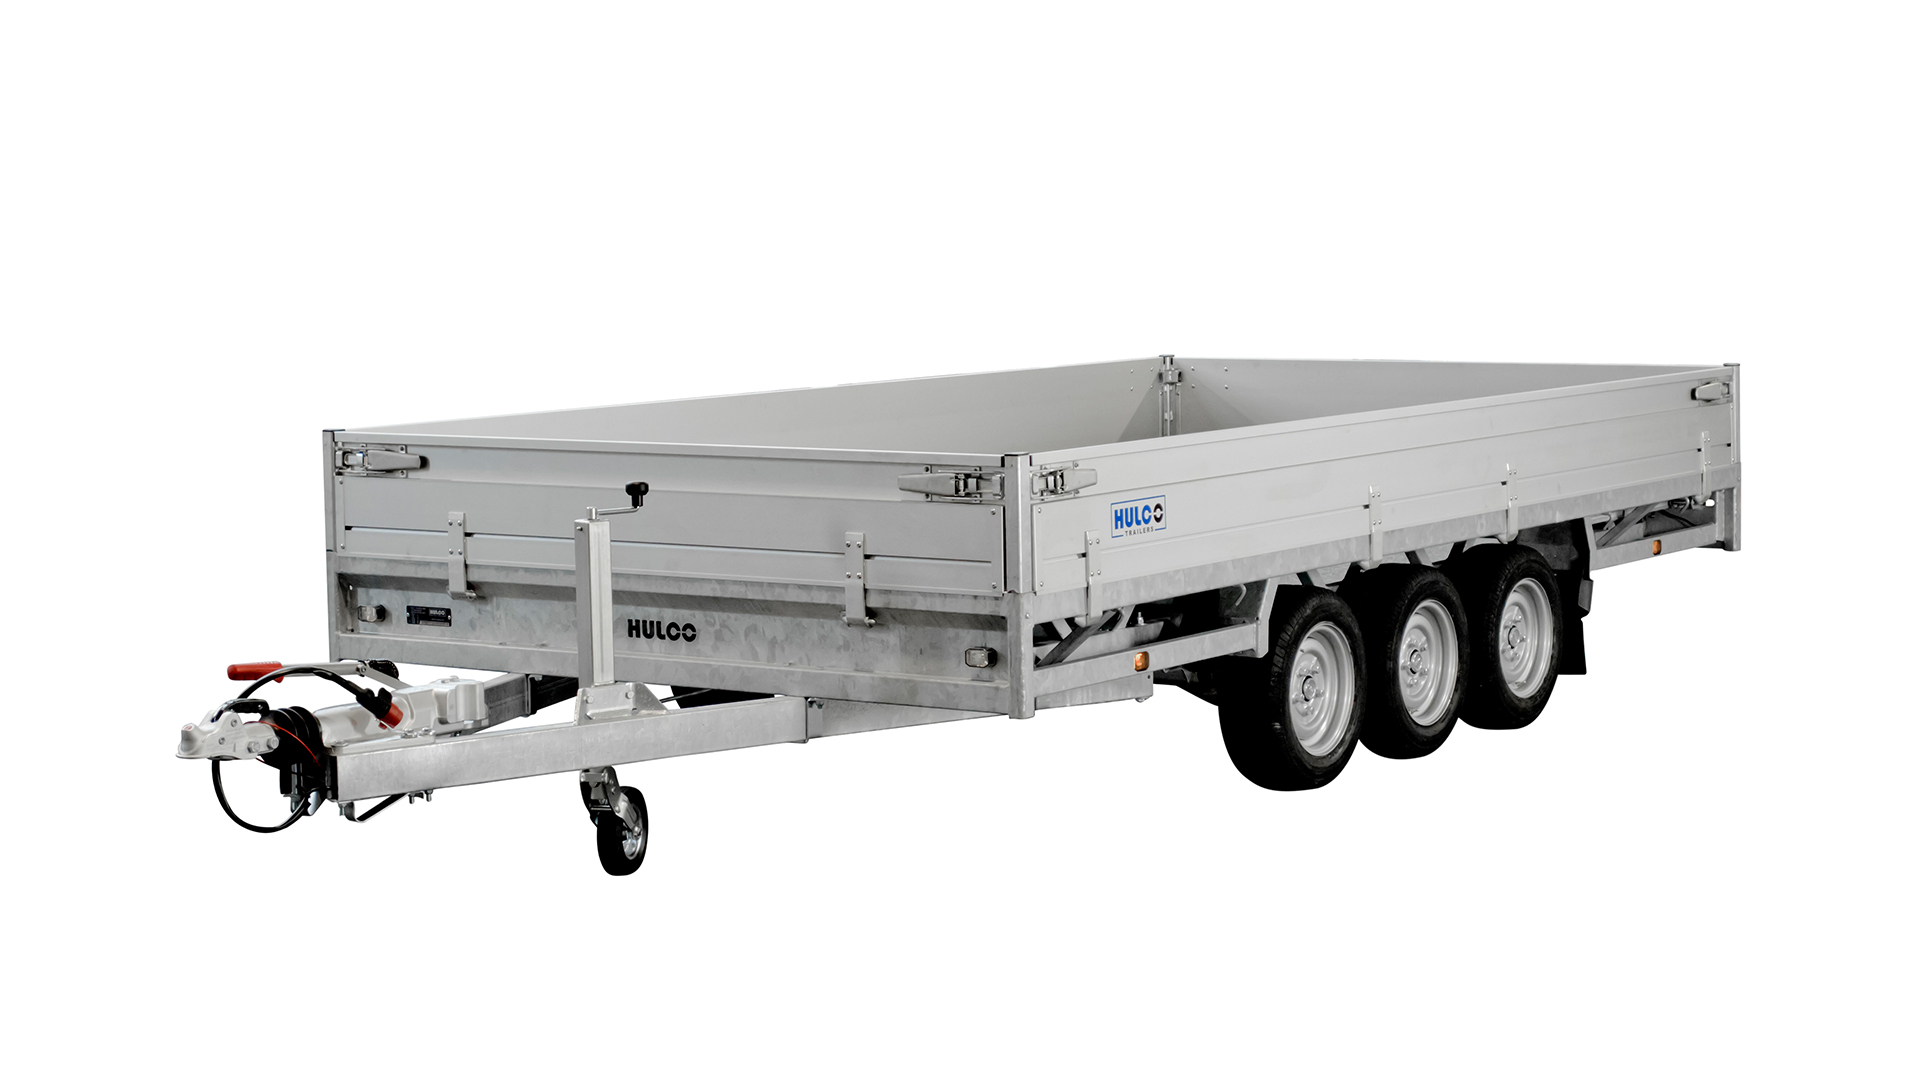 Hulco PKW Anhänger Hochlader Alu 3500 kg, Ladefläche 5,02 x2,23 m - Tridem